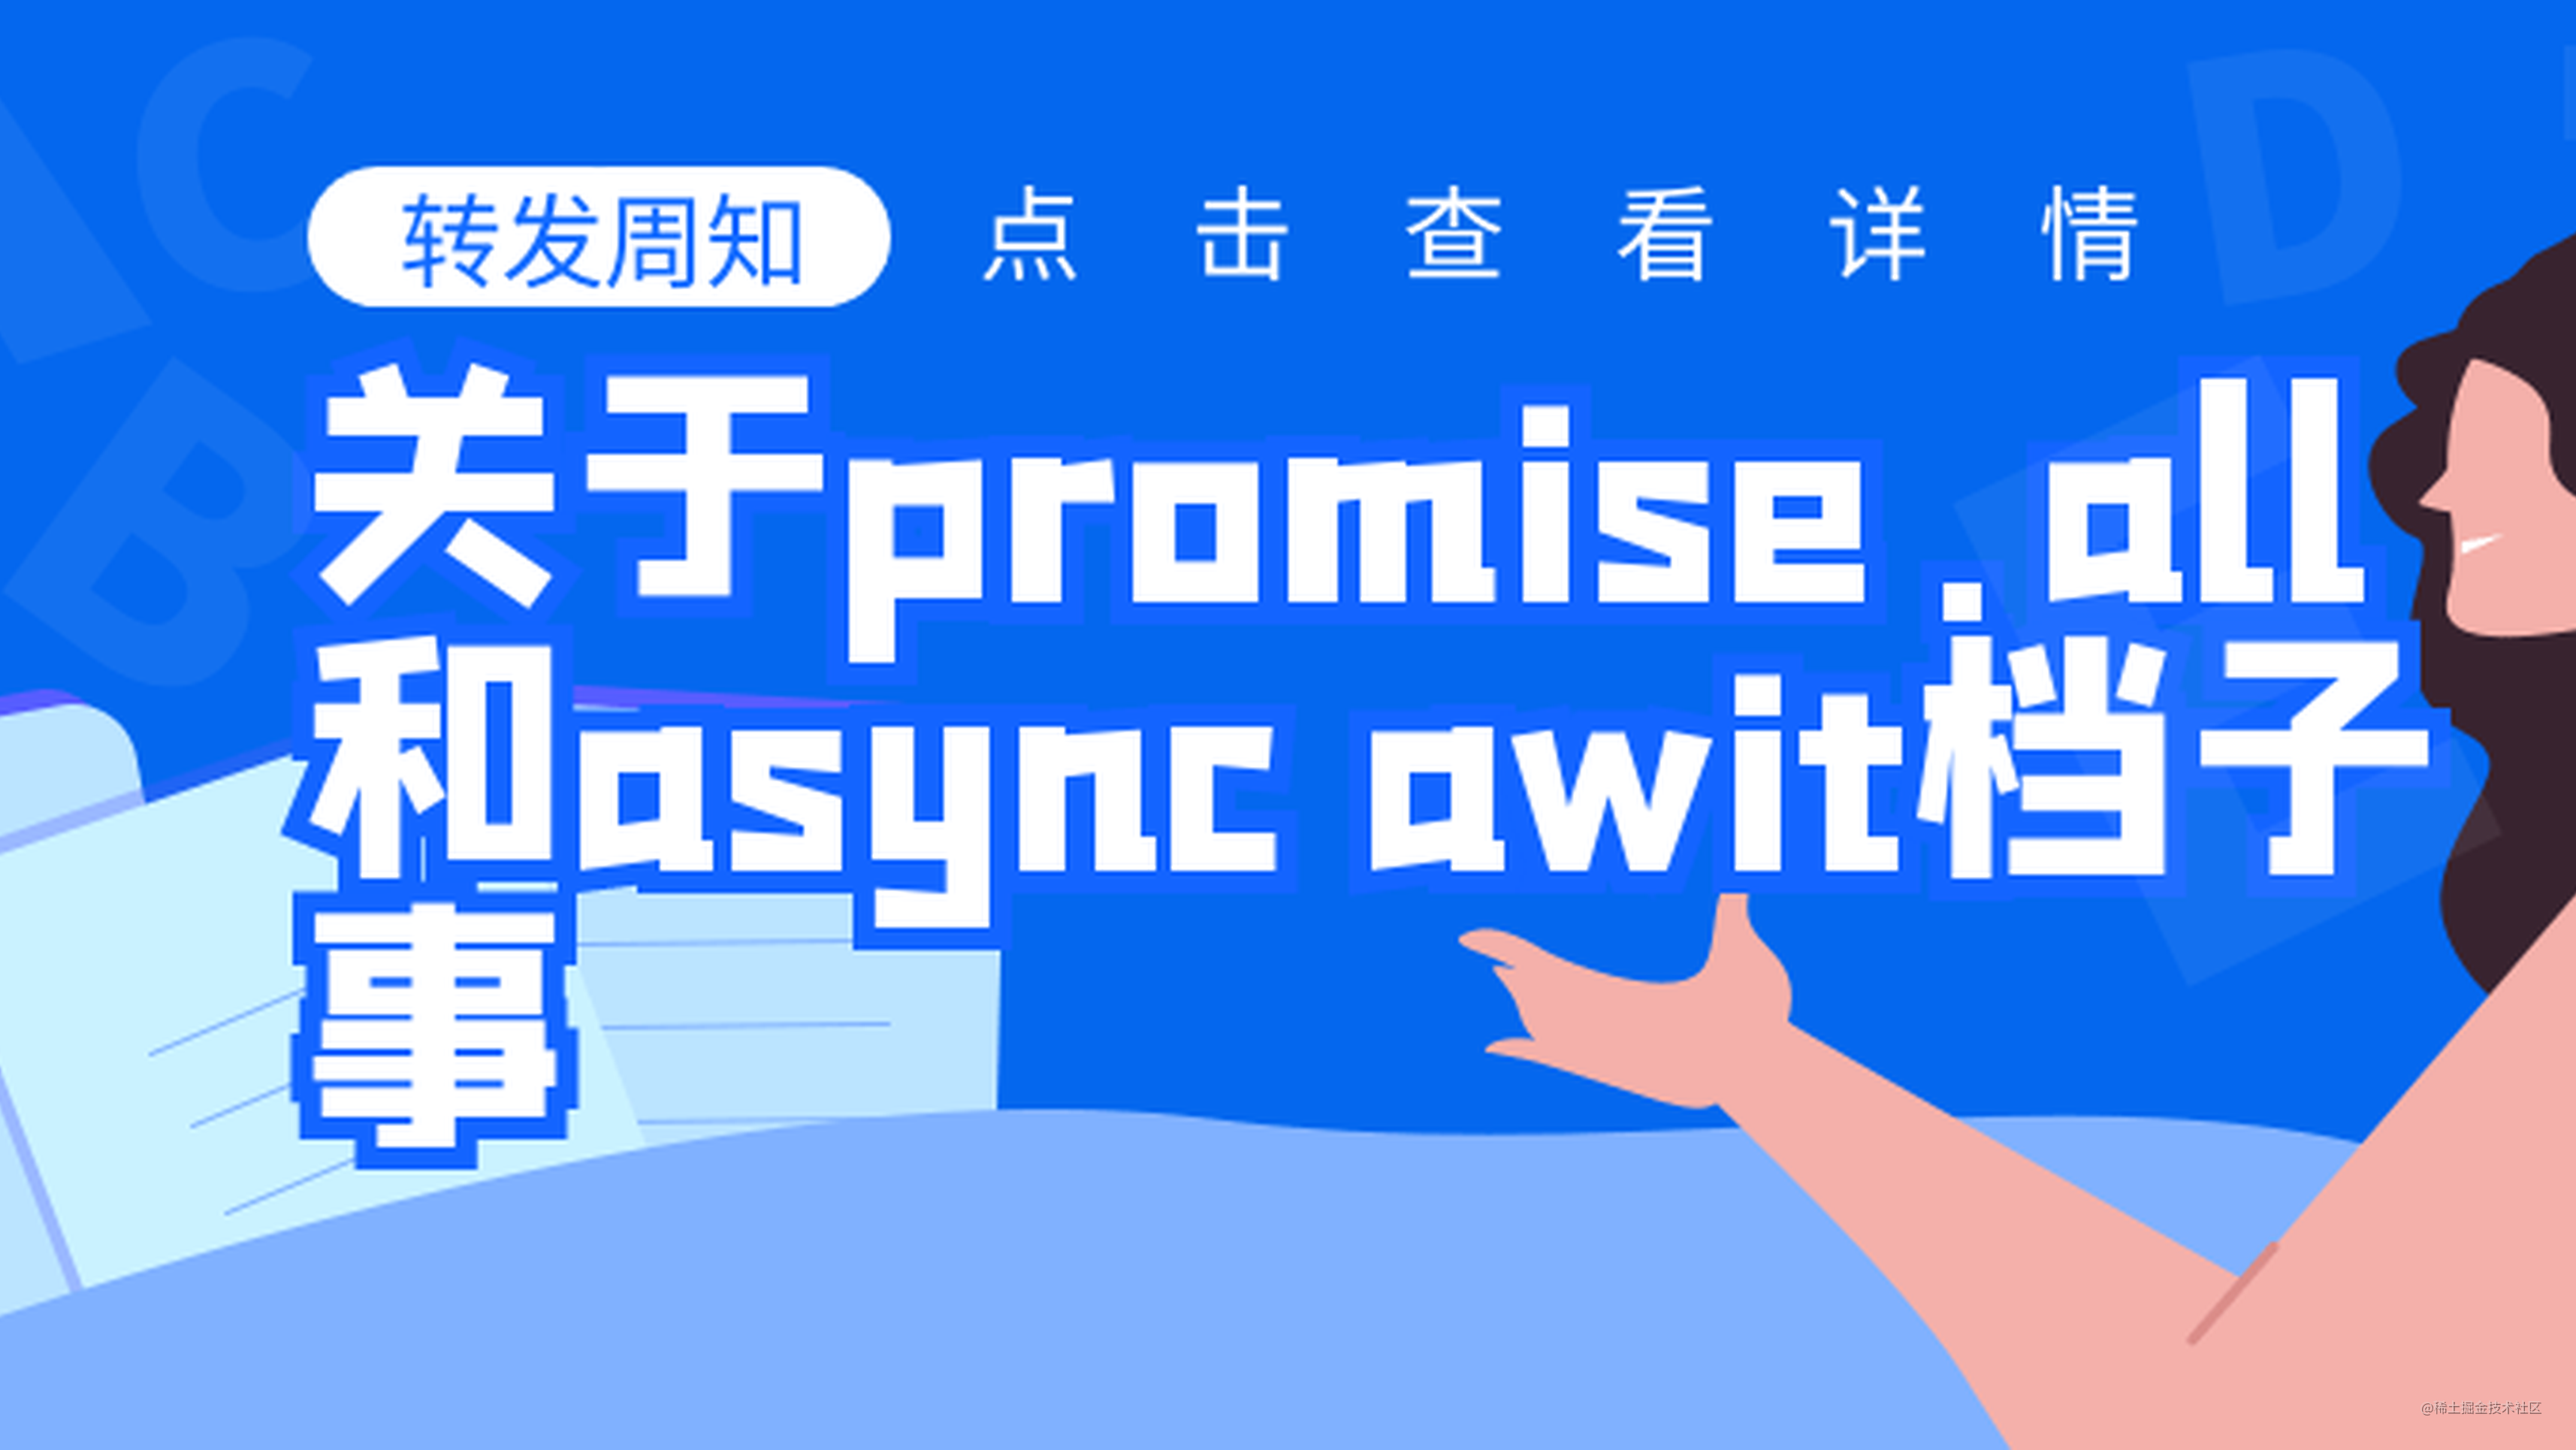 关于 Promise.all 和 async await 这档子事儿